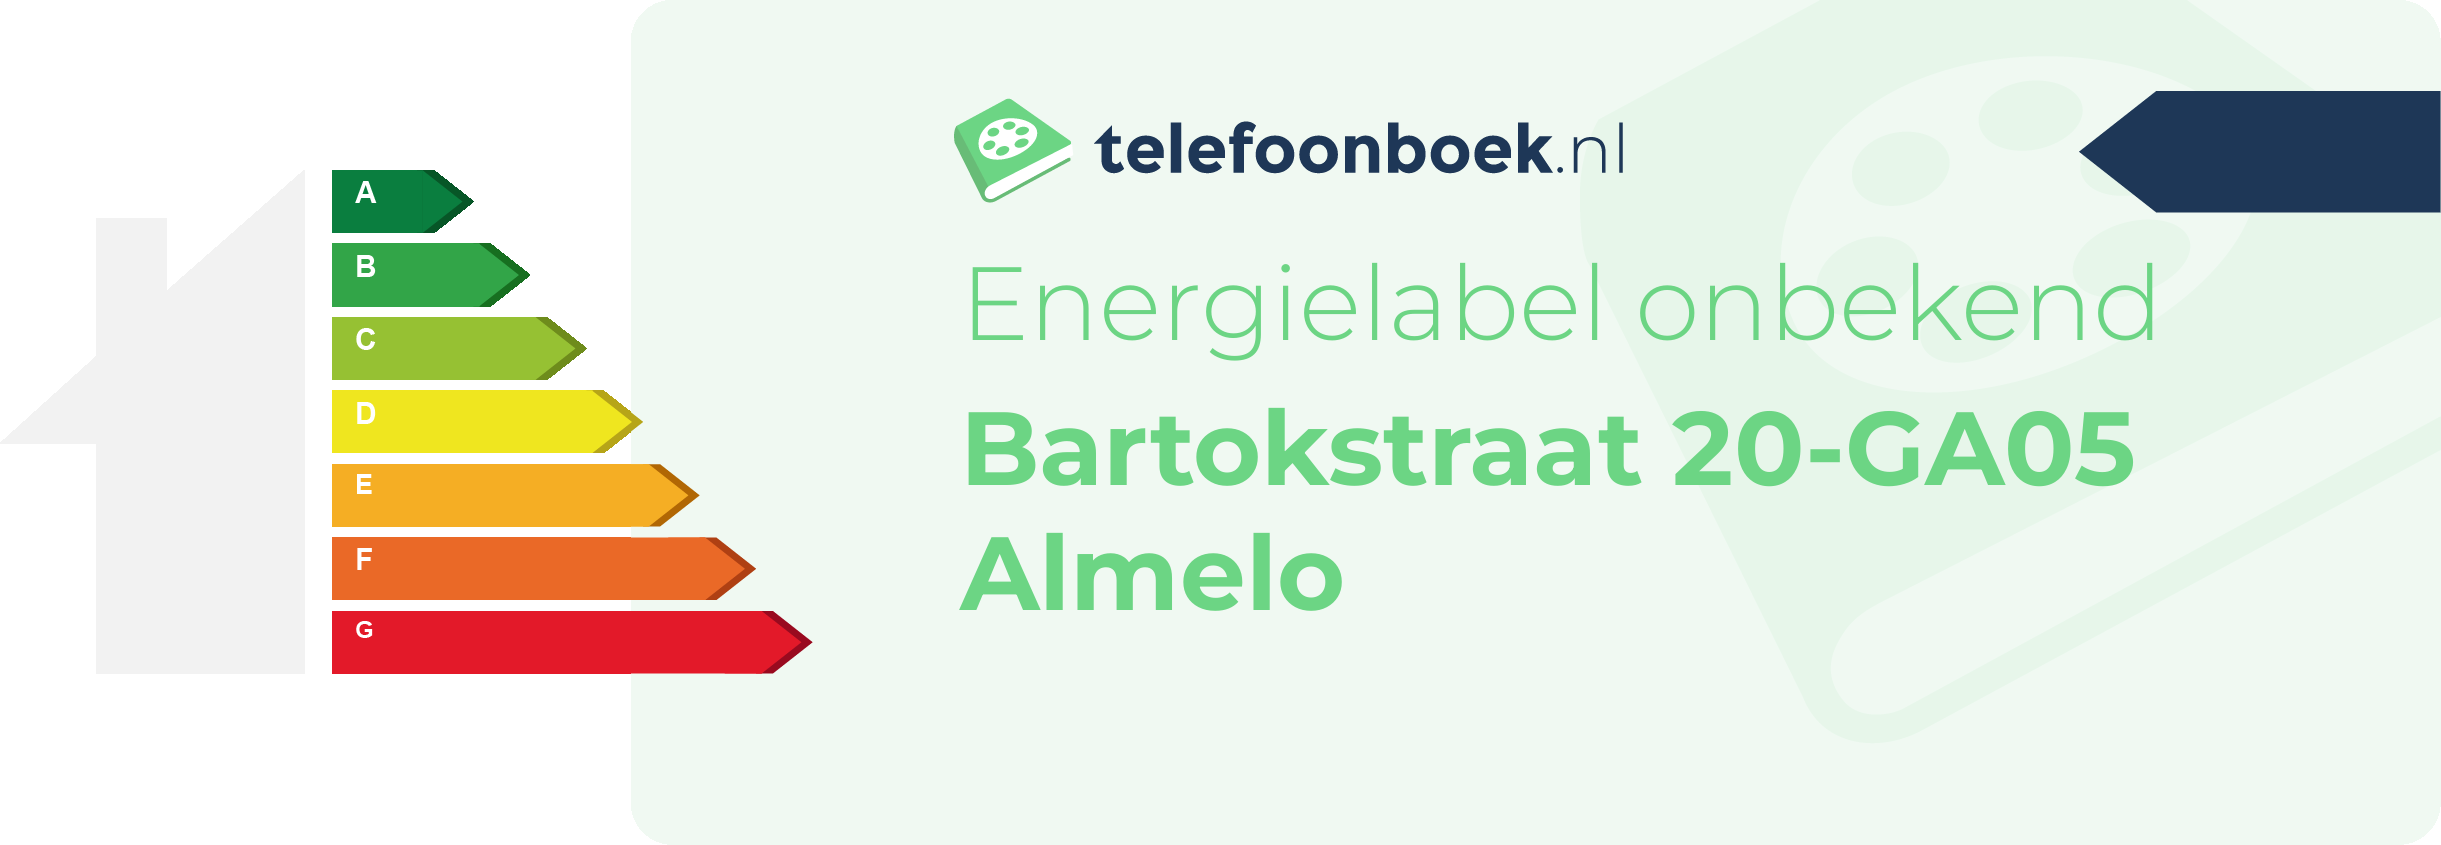 Energielabel Bartokstraat 20-GA05 Almelo